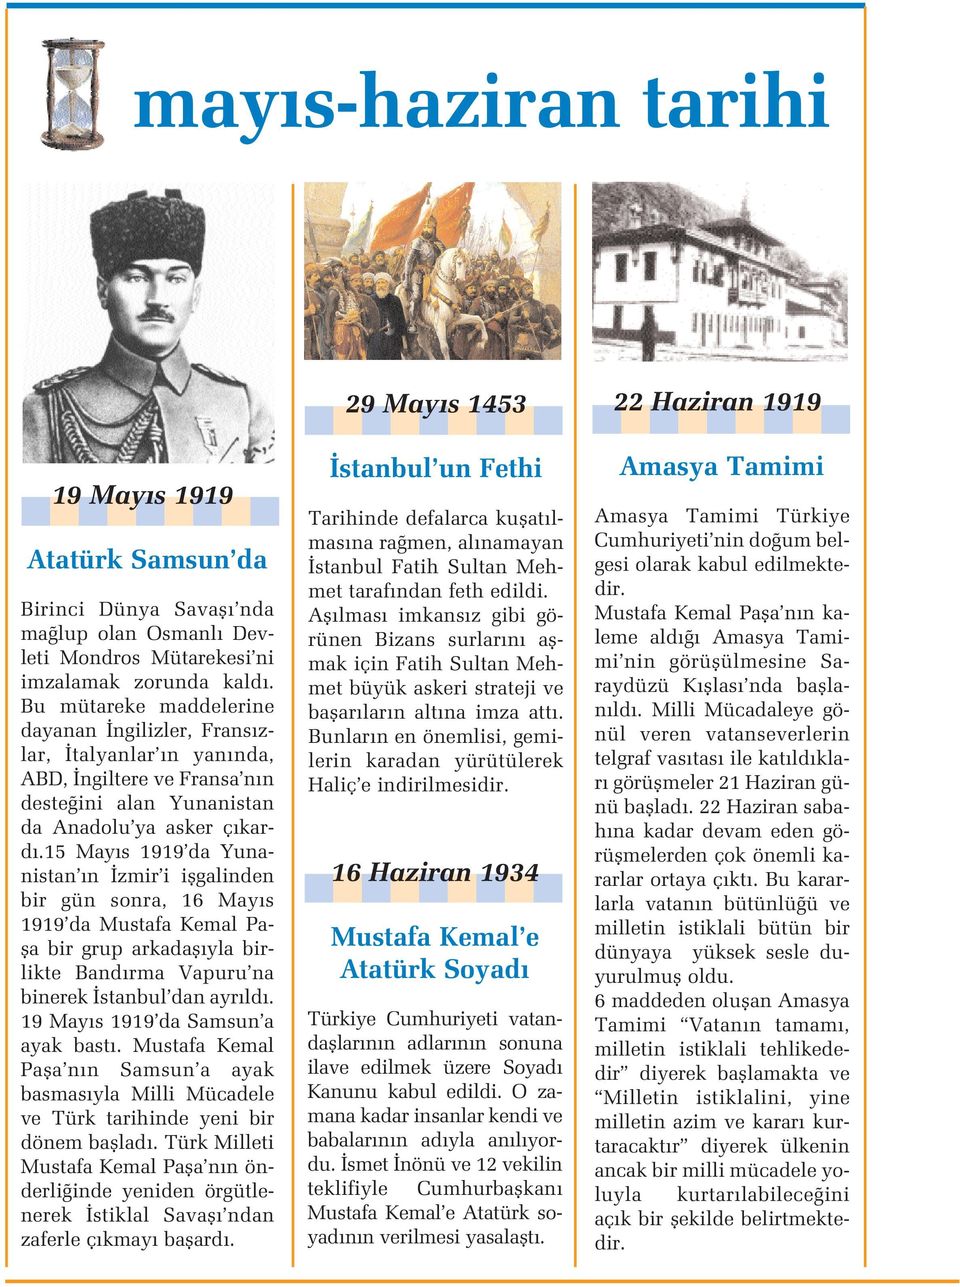 15 May s 1919 da Yunanistan n zmir i iflgalinden bir gün sonra, 16 May s 1919 da Mustafa Kemal Pafla bir grup arkadafl yla birlikte Band rma Vapuru na binerek stanbul dan ayr ld.